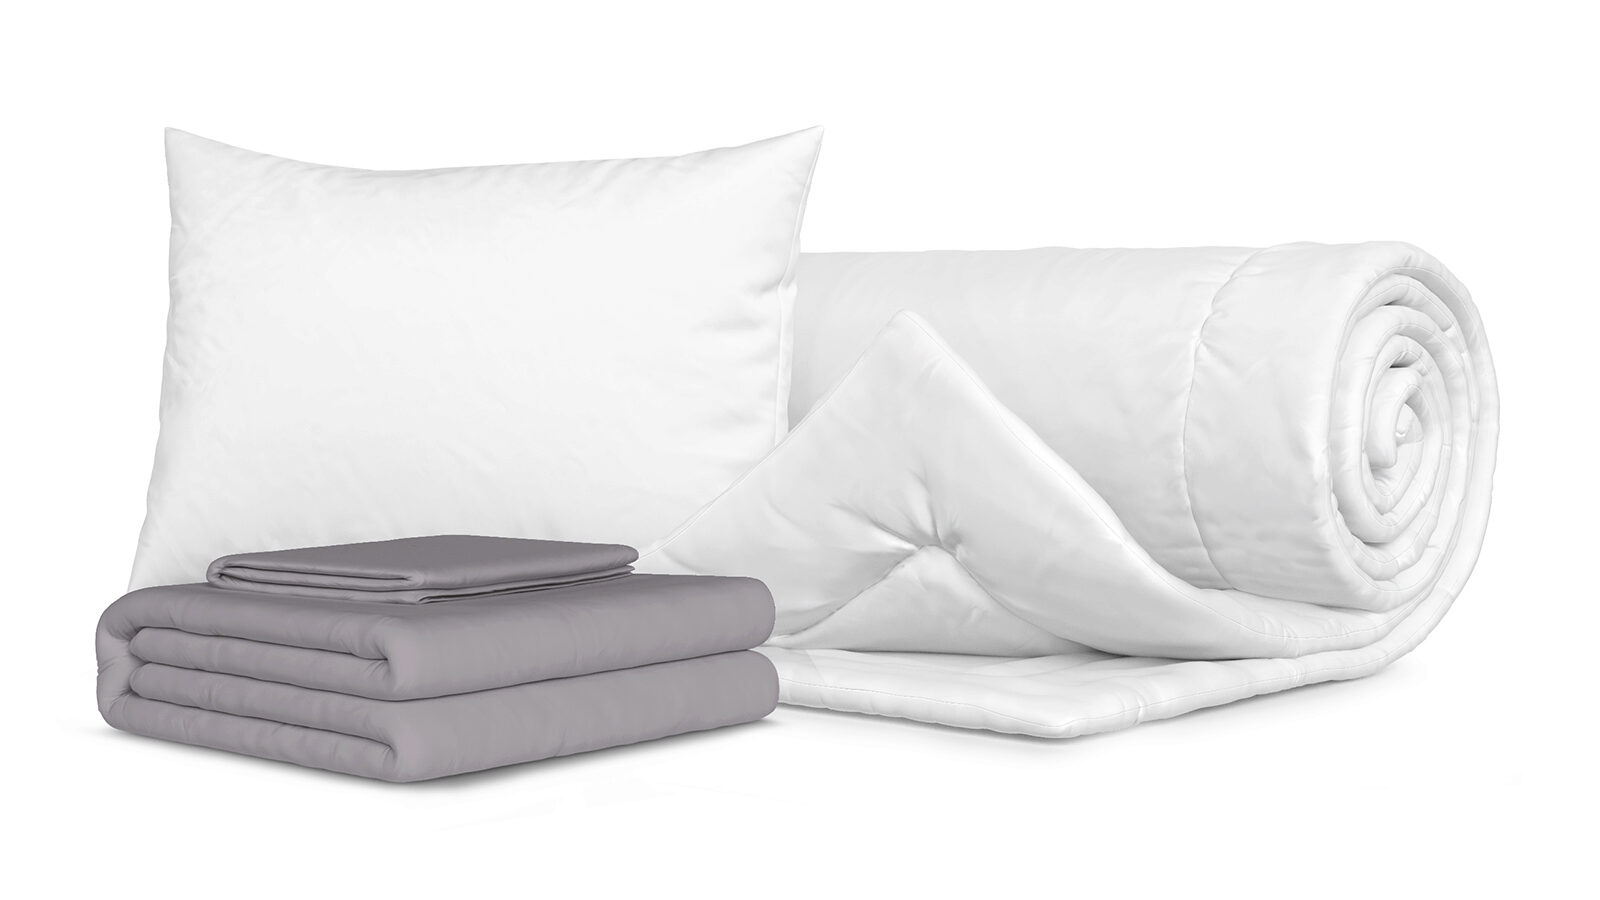 Комплект Одеяло Beat + Подушка Sky + Комплект постельного белья Comfort Cotton, цвет: Светло-серый smartsleep подушка smart comfort детская